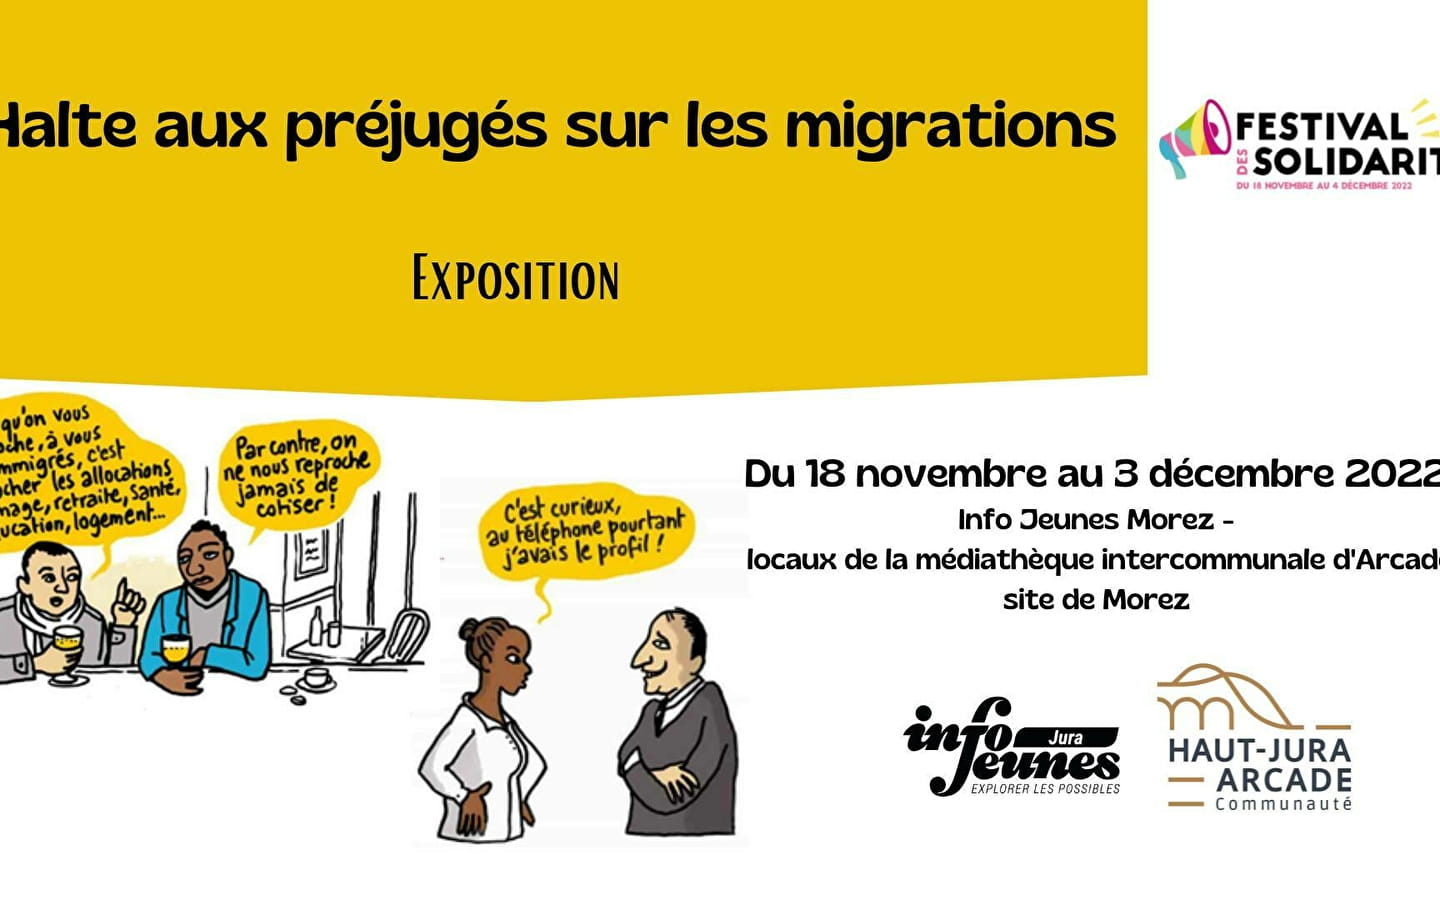 Expositions - Halte aux préjugés sur les migrations